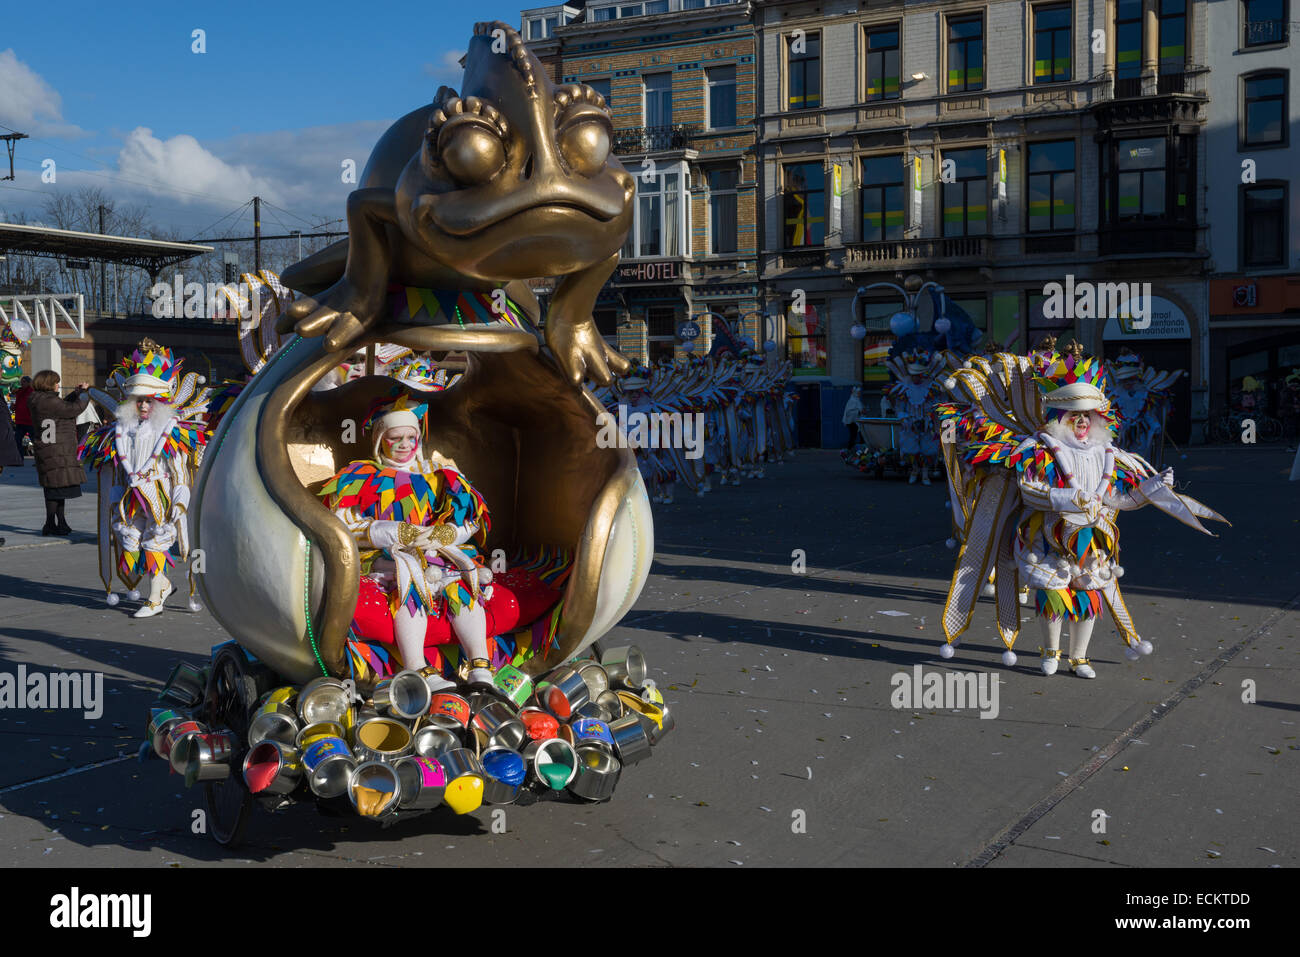 Carnaval ornés de couleurs vives et de flottement des personnages costumés dans le cortège du carnaval d'Alost, Carnaval Lundi, Alost, Belgique Banque D'Images